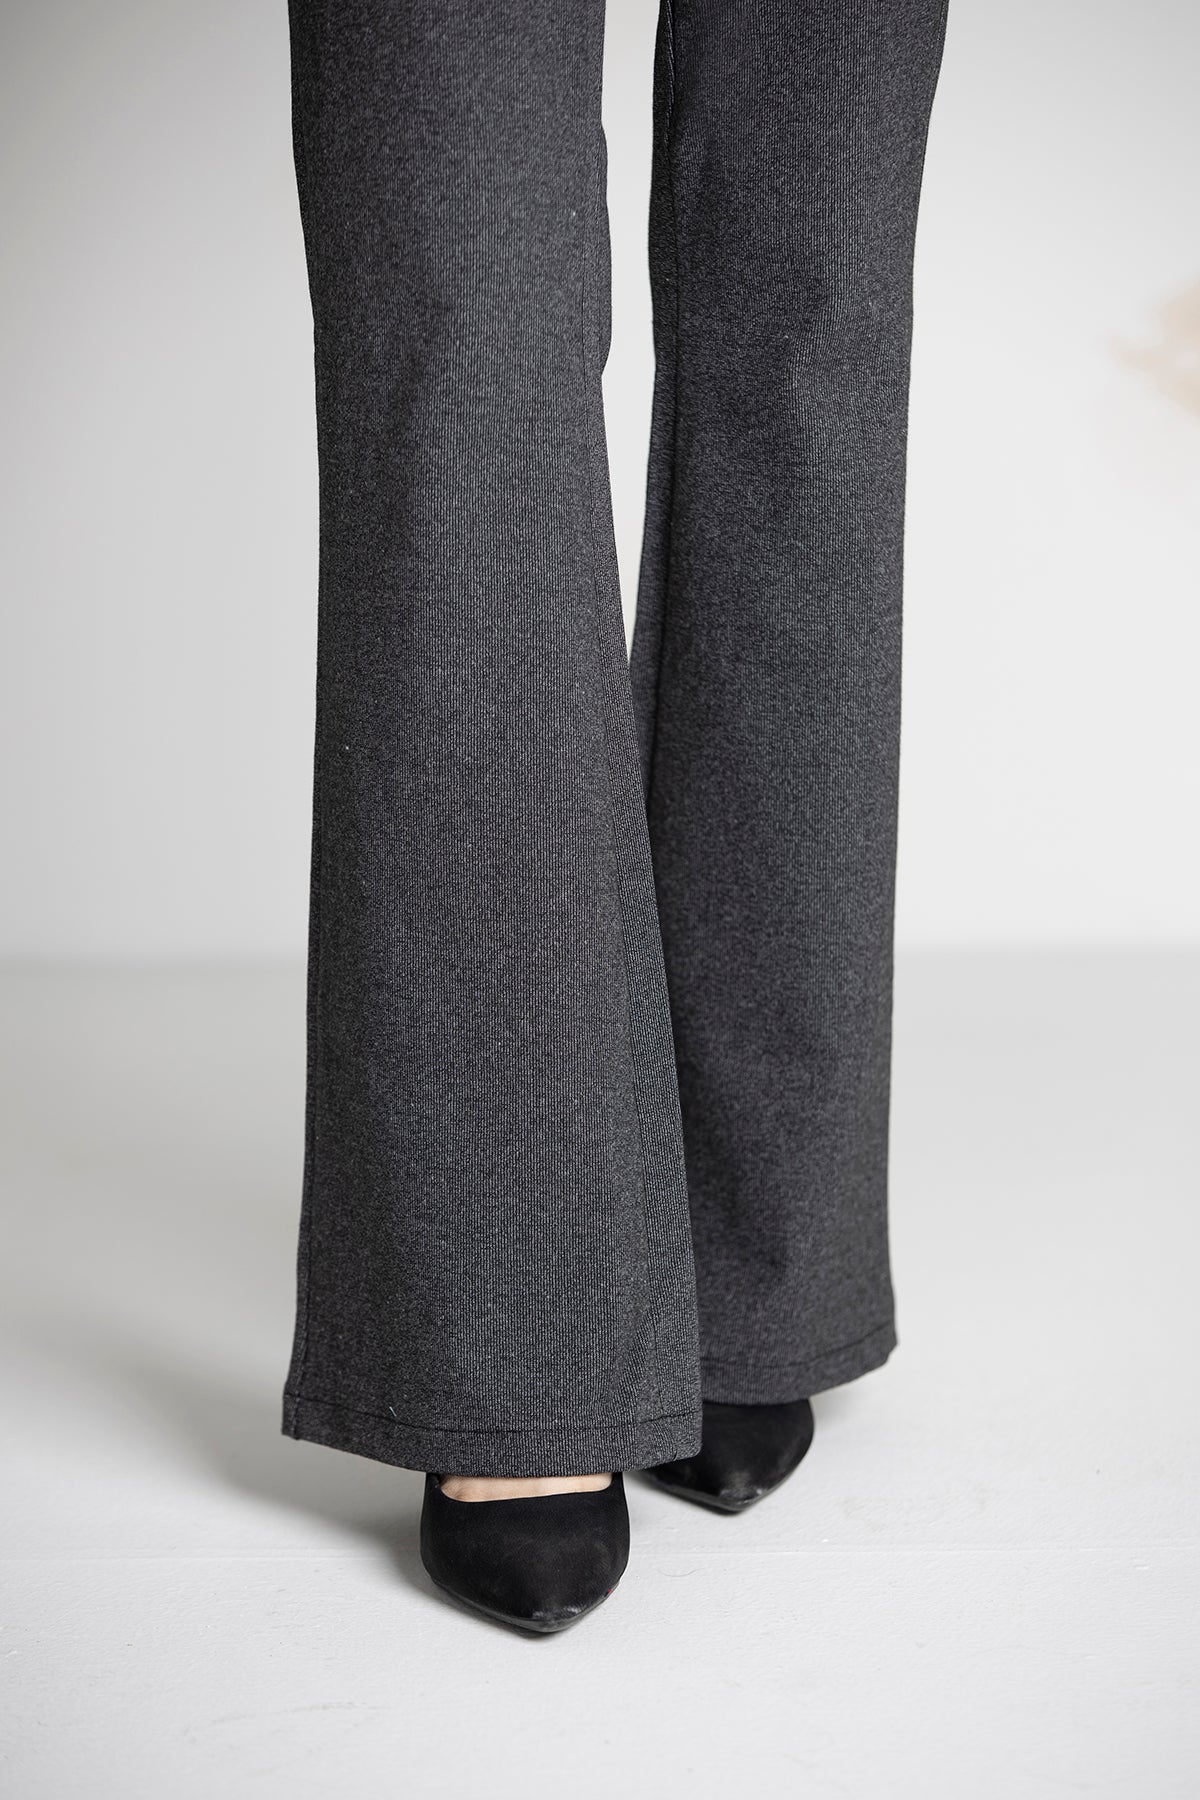 Pakistani Designers Original Nishat Linen Suit Kameez Trousers Dupatta M /  L siz | eBay